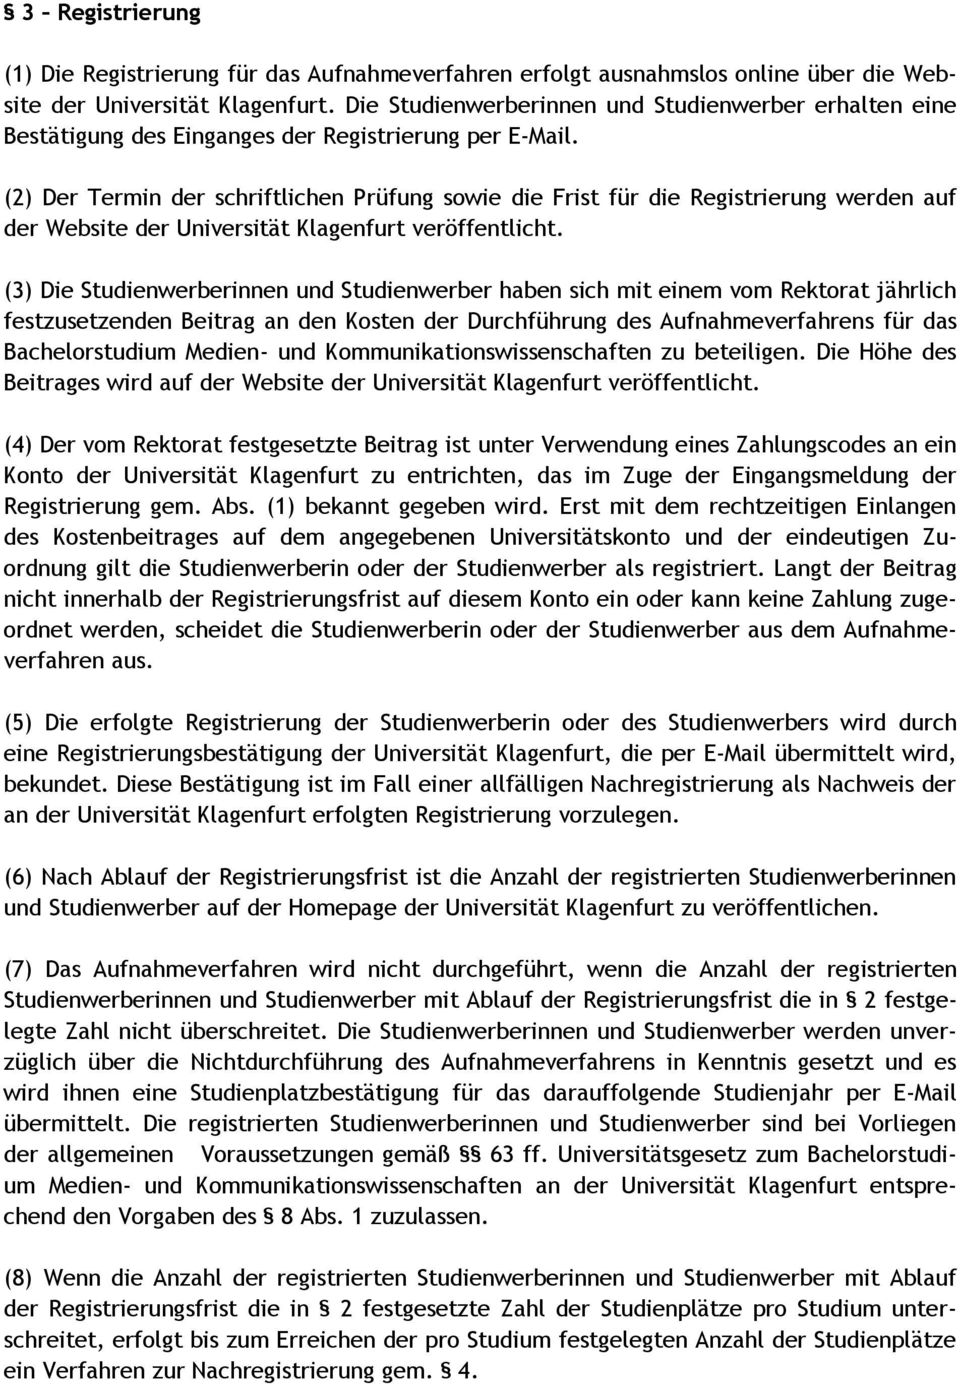 (2) Der Termin der schriftlichen Prüfung sowie die Frist für die Registrierung werden auf der Website der Universität Klagenfurt veröffentlicht.